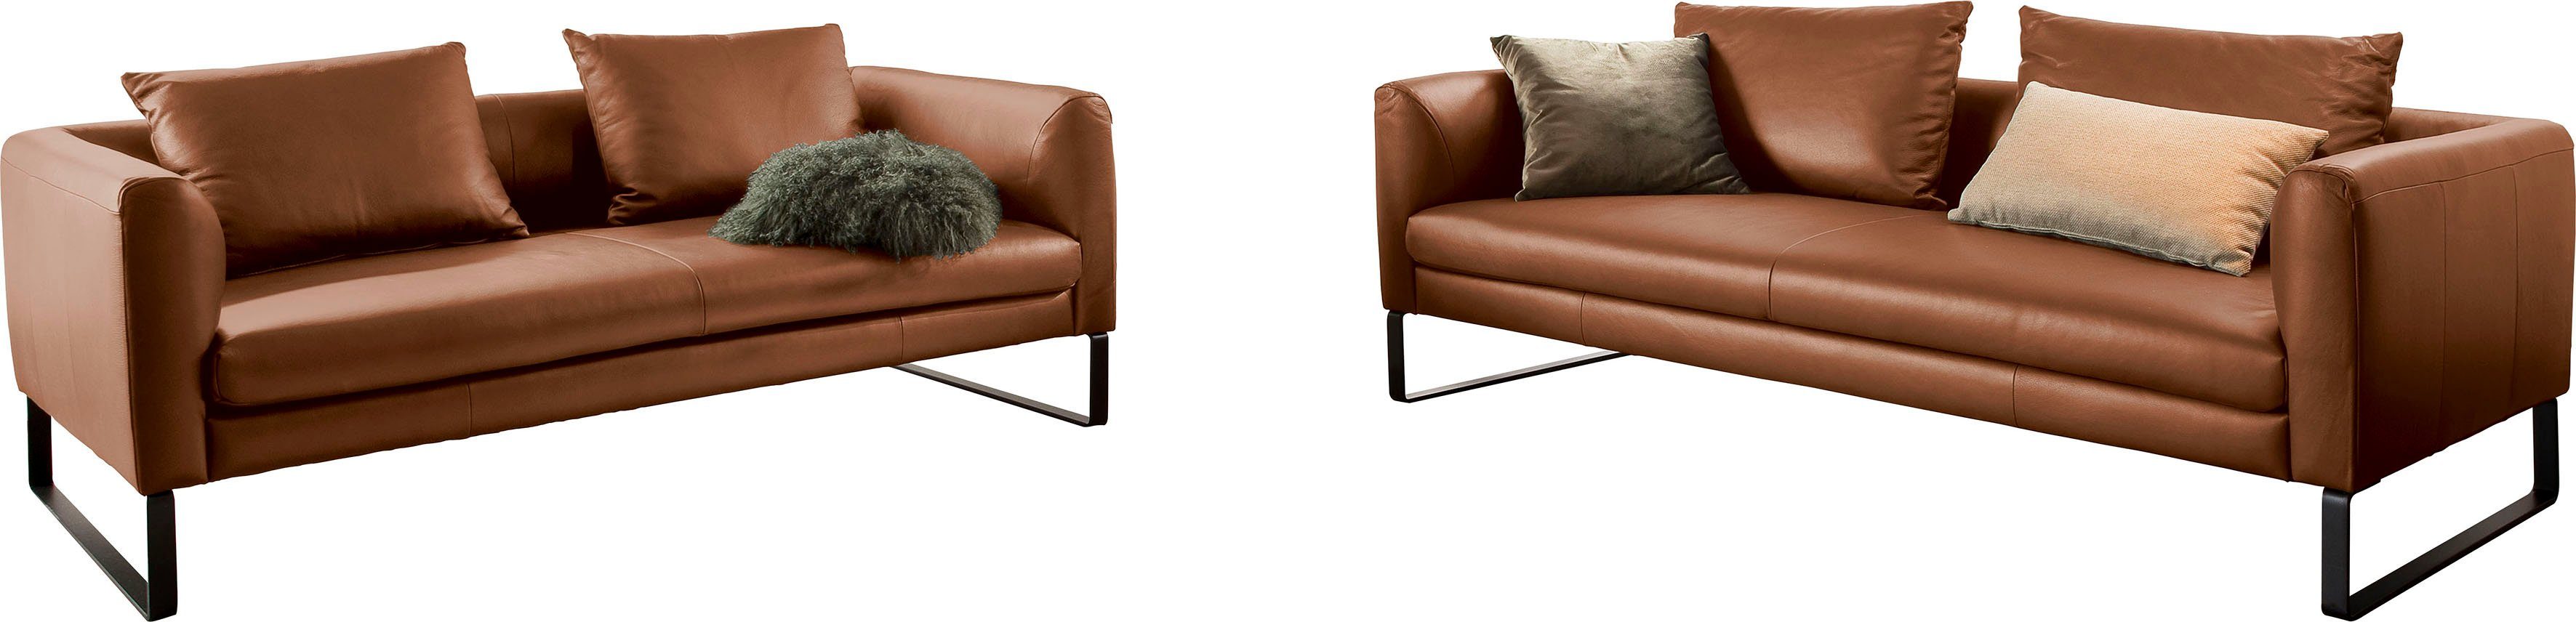 3C Candy Sofa, Sofaset bestehend aus 2,5-Sitzer und 3-Sitzer brandy